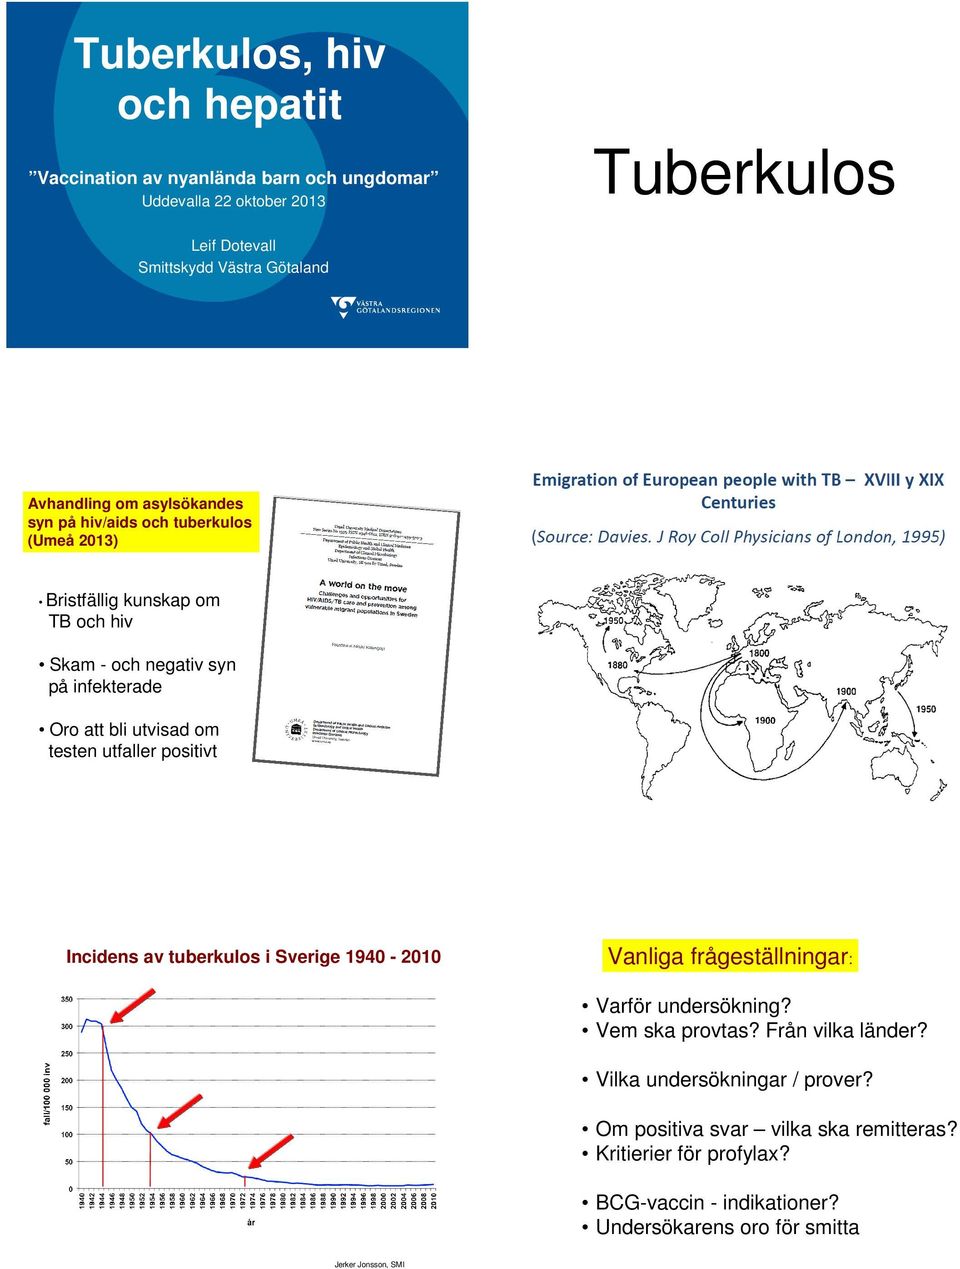 utvisad om testen utfaller positivt Incidens av tuberkulos i Sverige 1940-2010 Vanliga frågeställningar: Varför undersökning? Vem ska provtas?